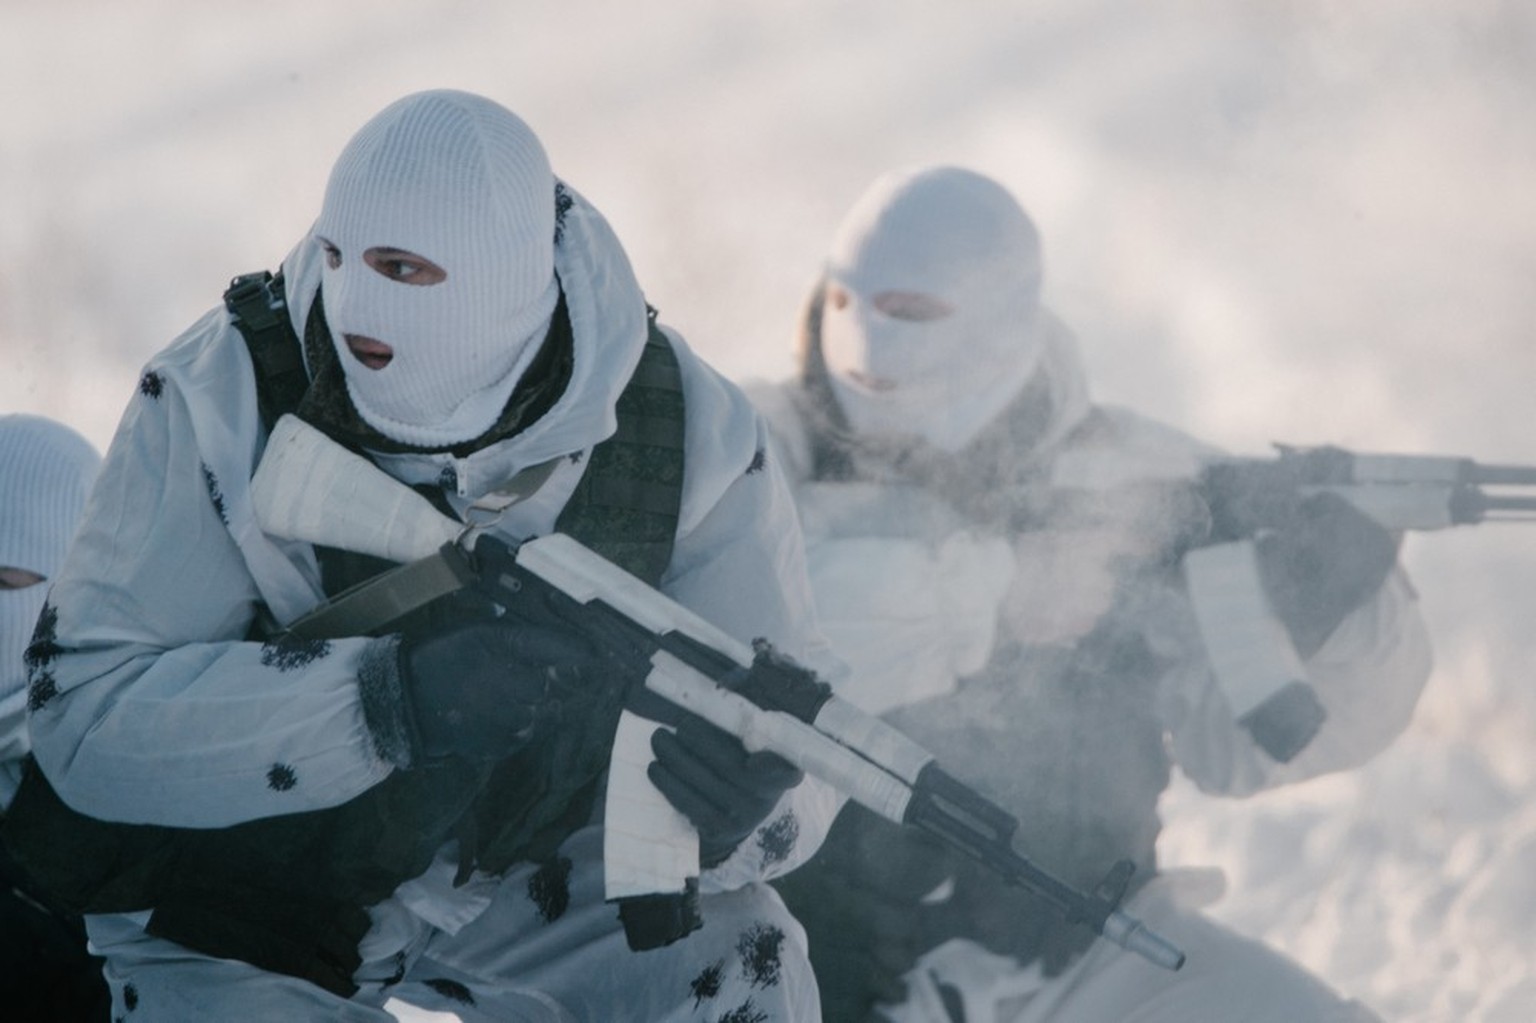 Des soldats russes déployés dans l'arctique (image symbolique).